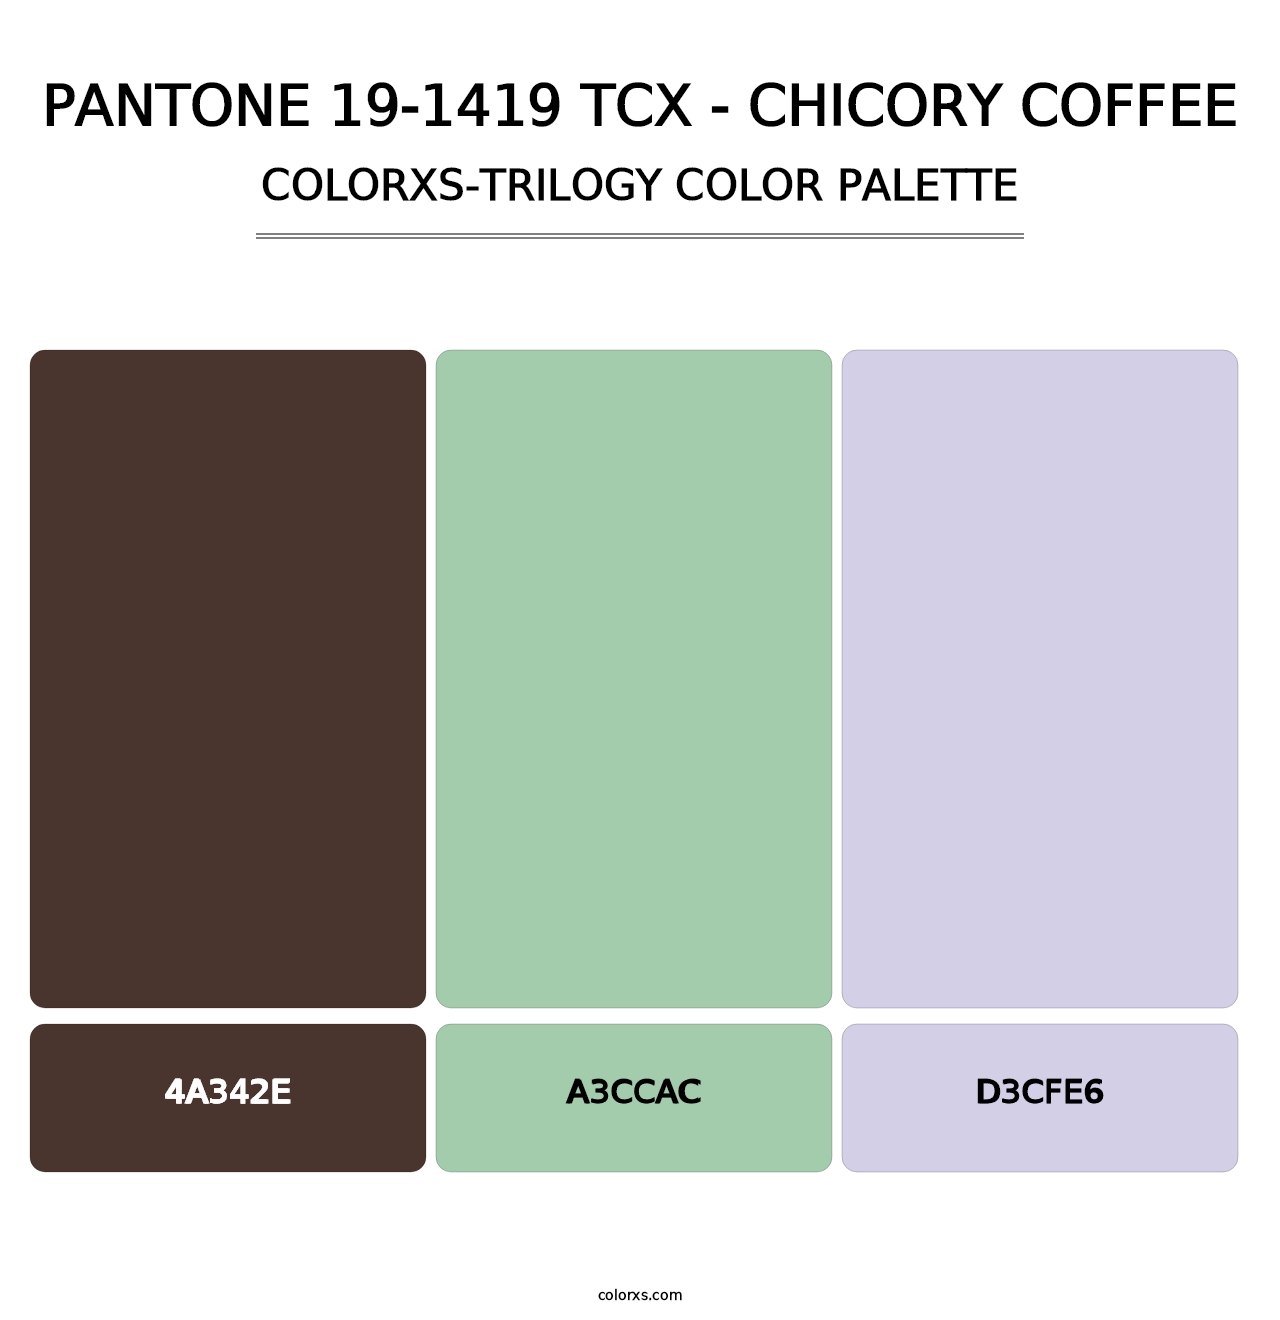 PANTONE 19-1419 TCX - Chicory Coffee - Colorxs Trilogy Palette